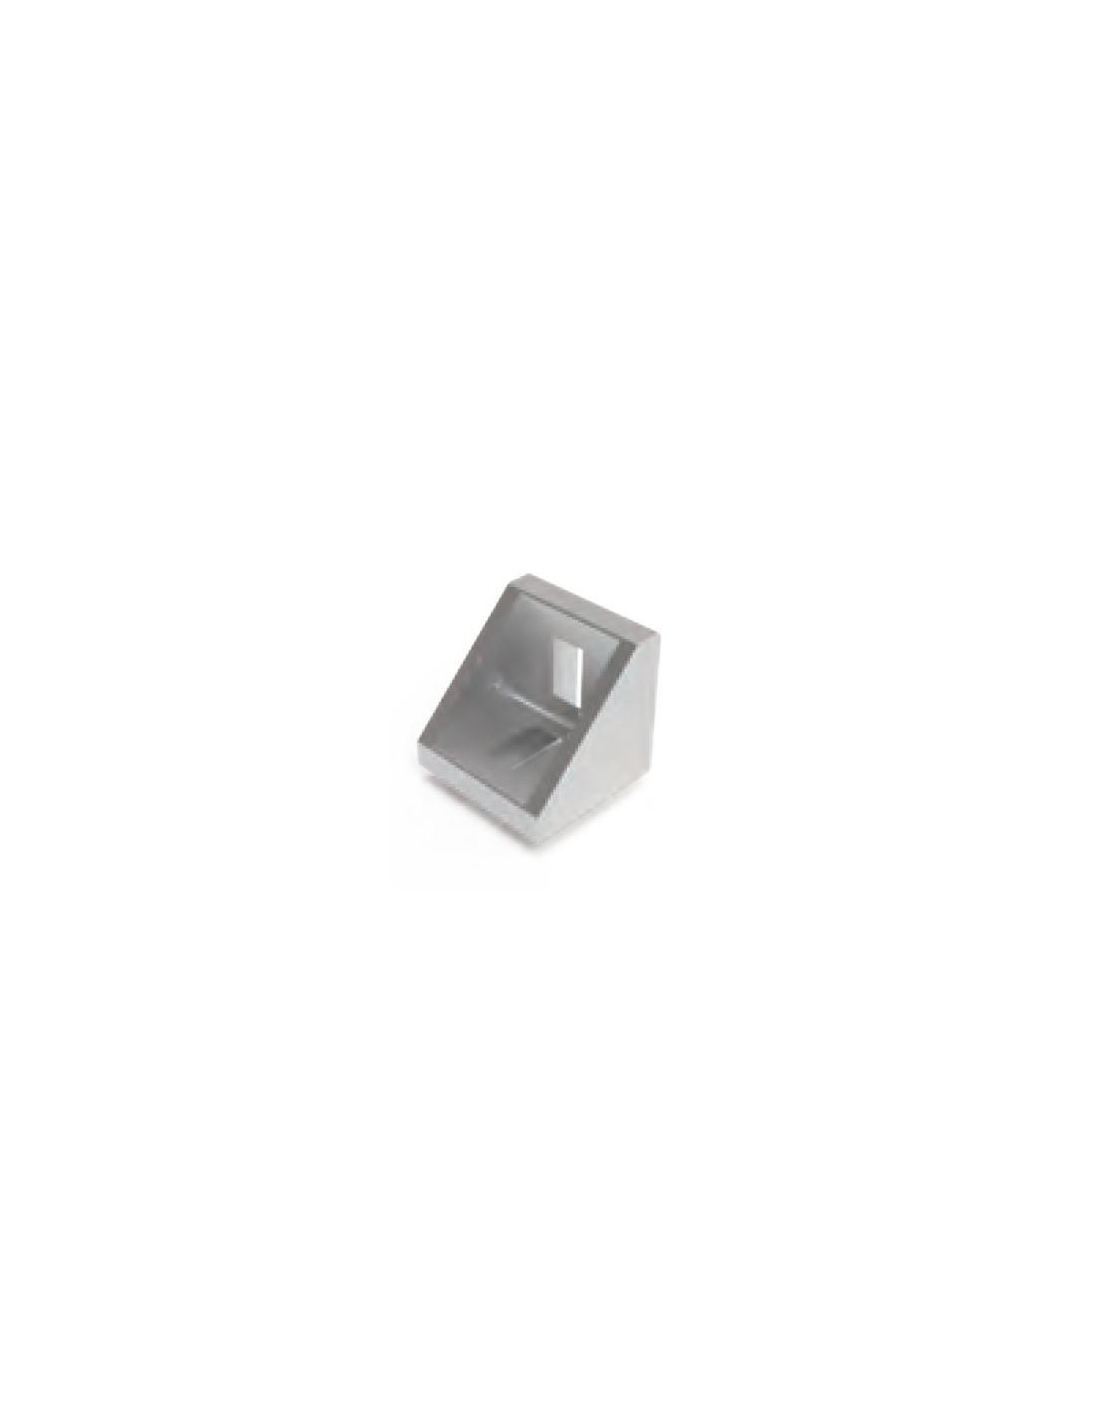 Aluminum square for 30x30